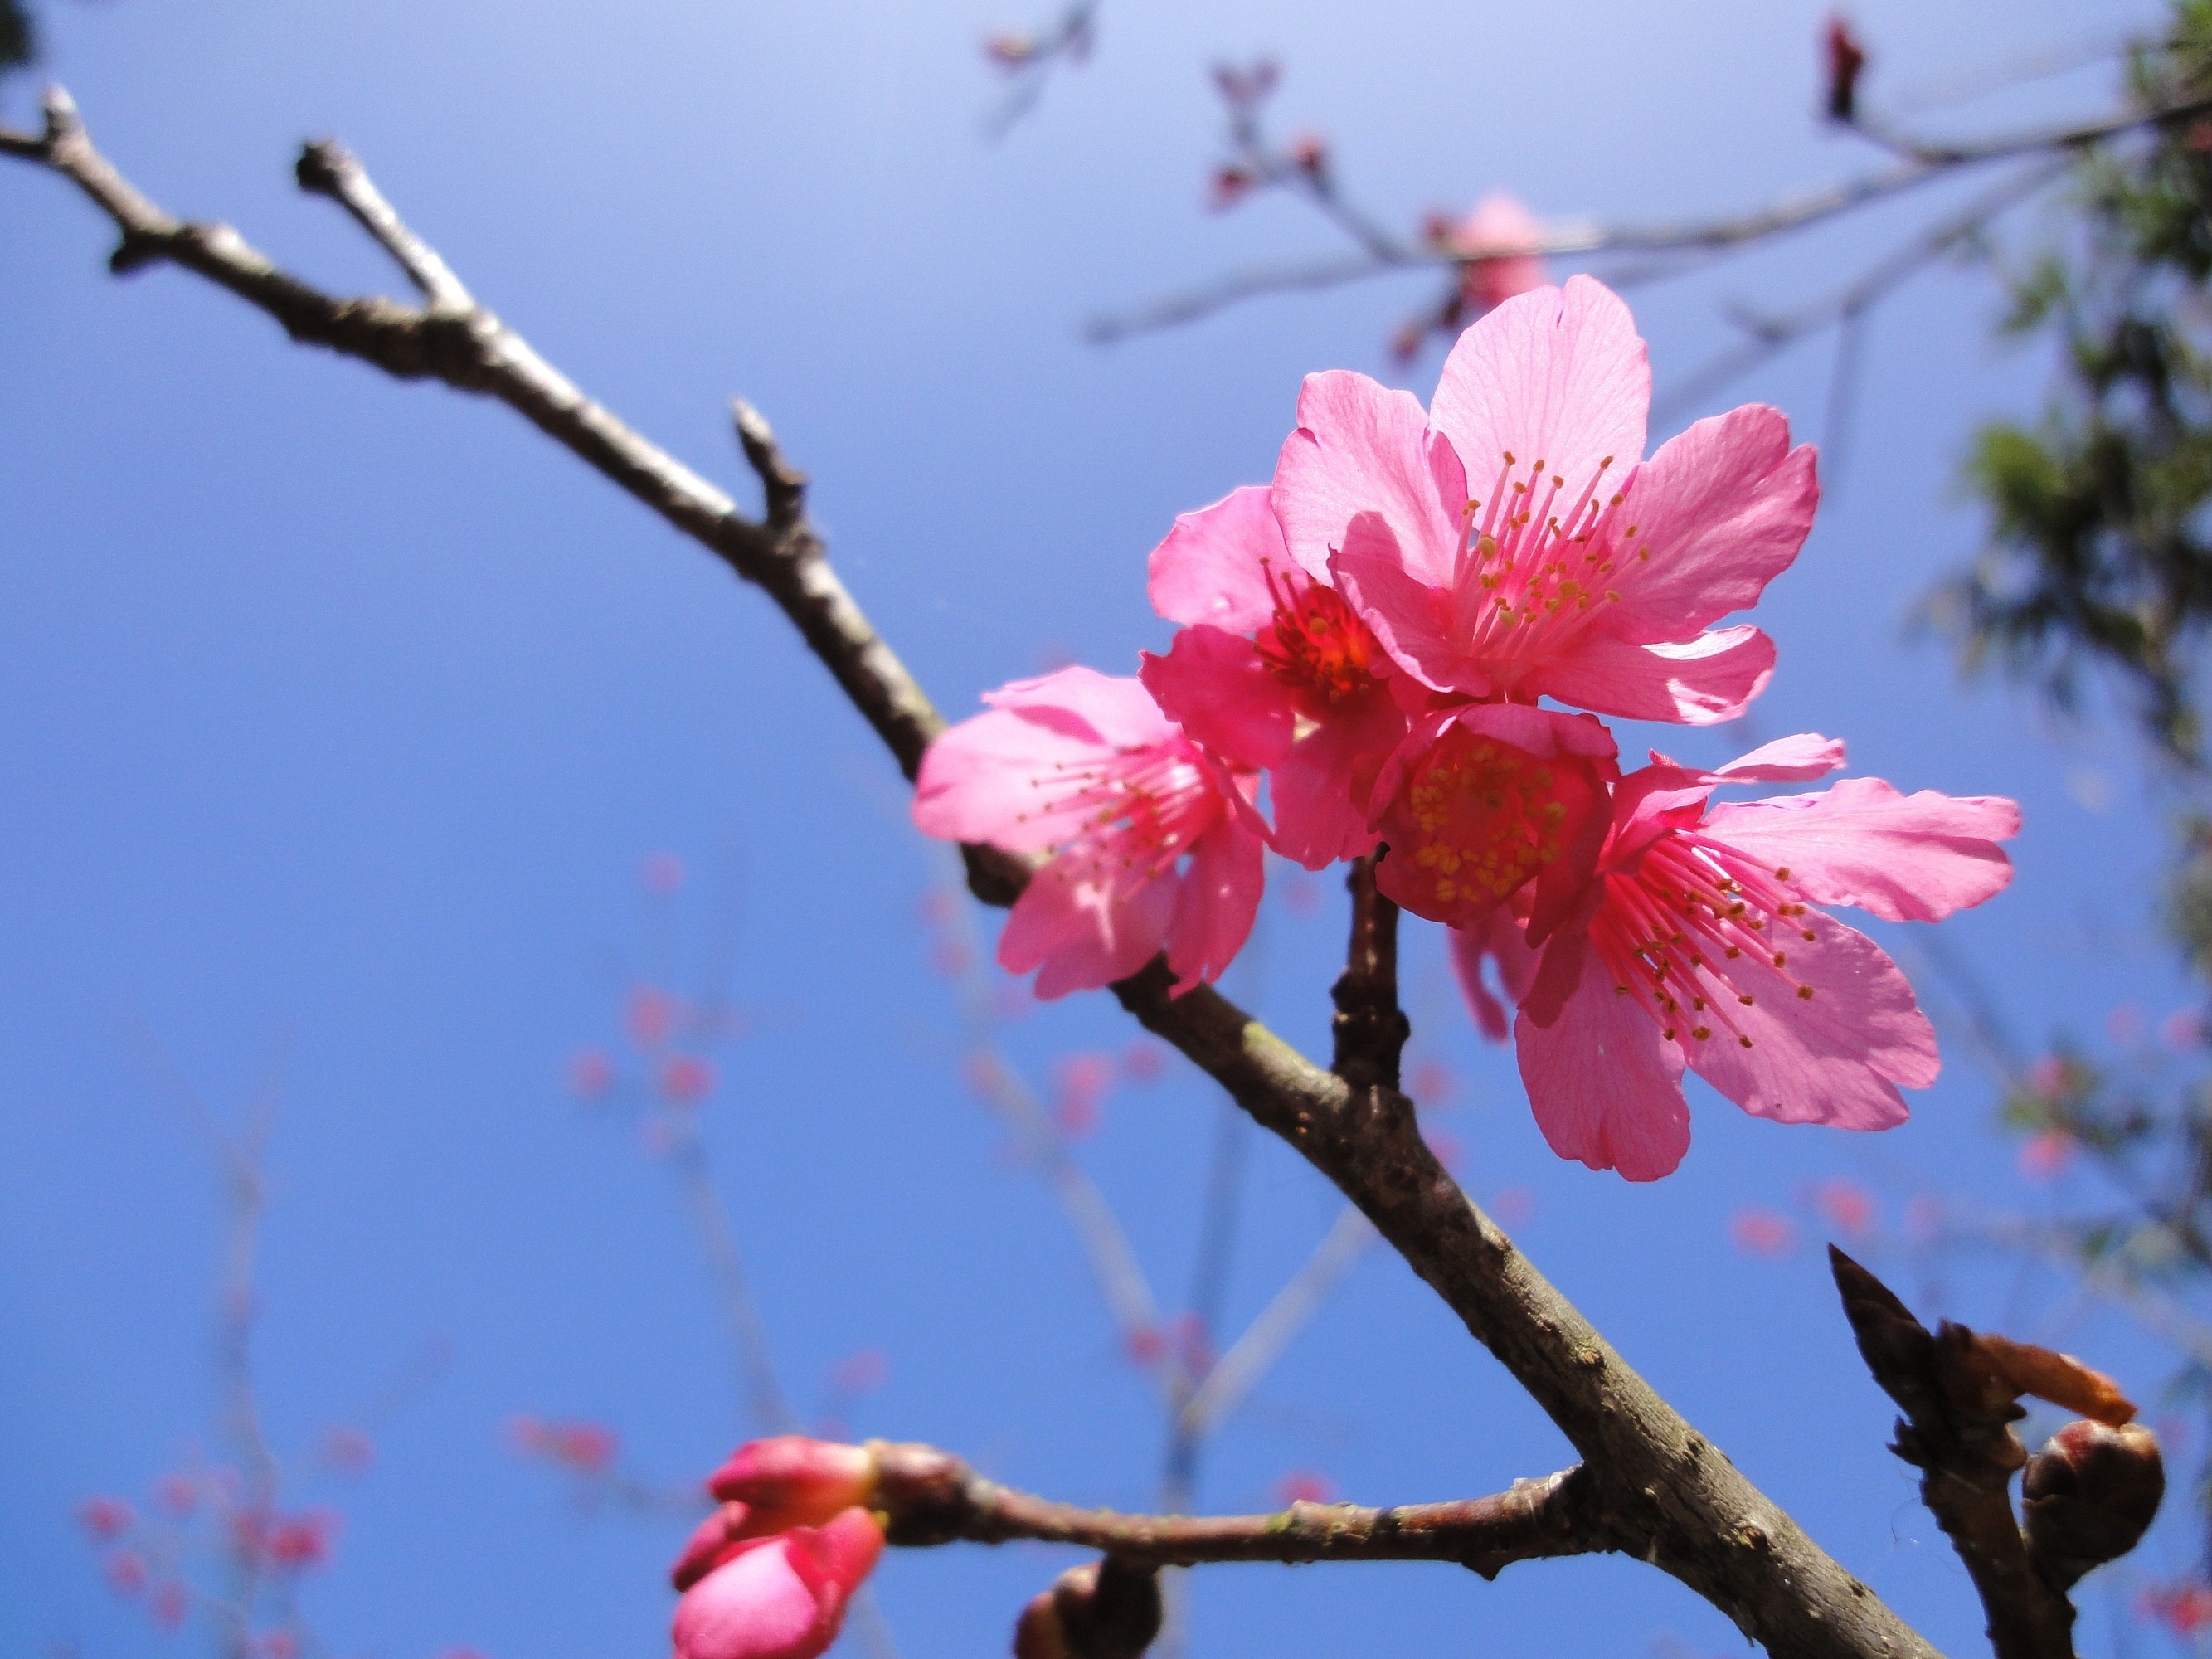 Sakura flower blooming under blue sky